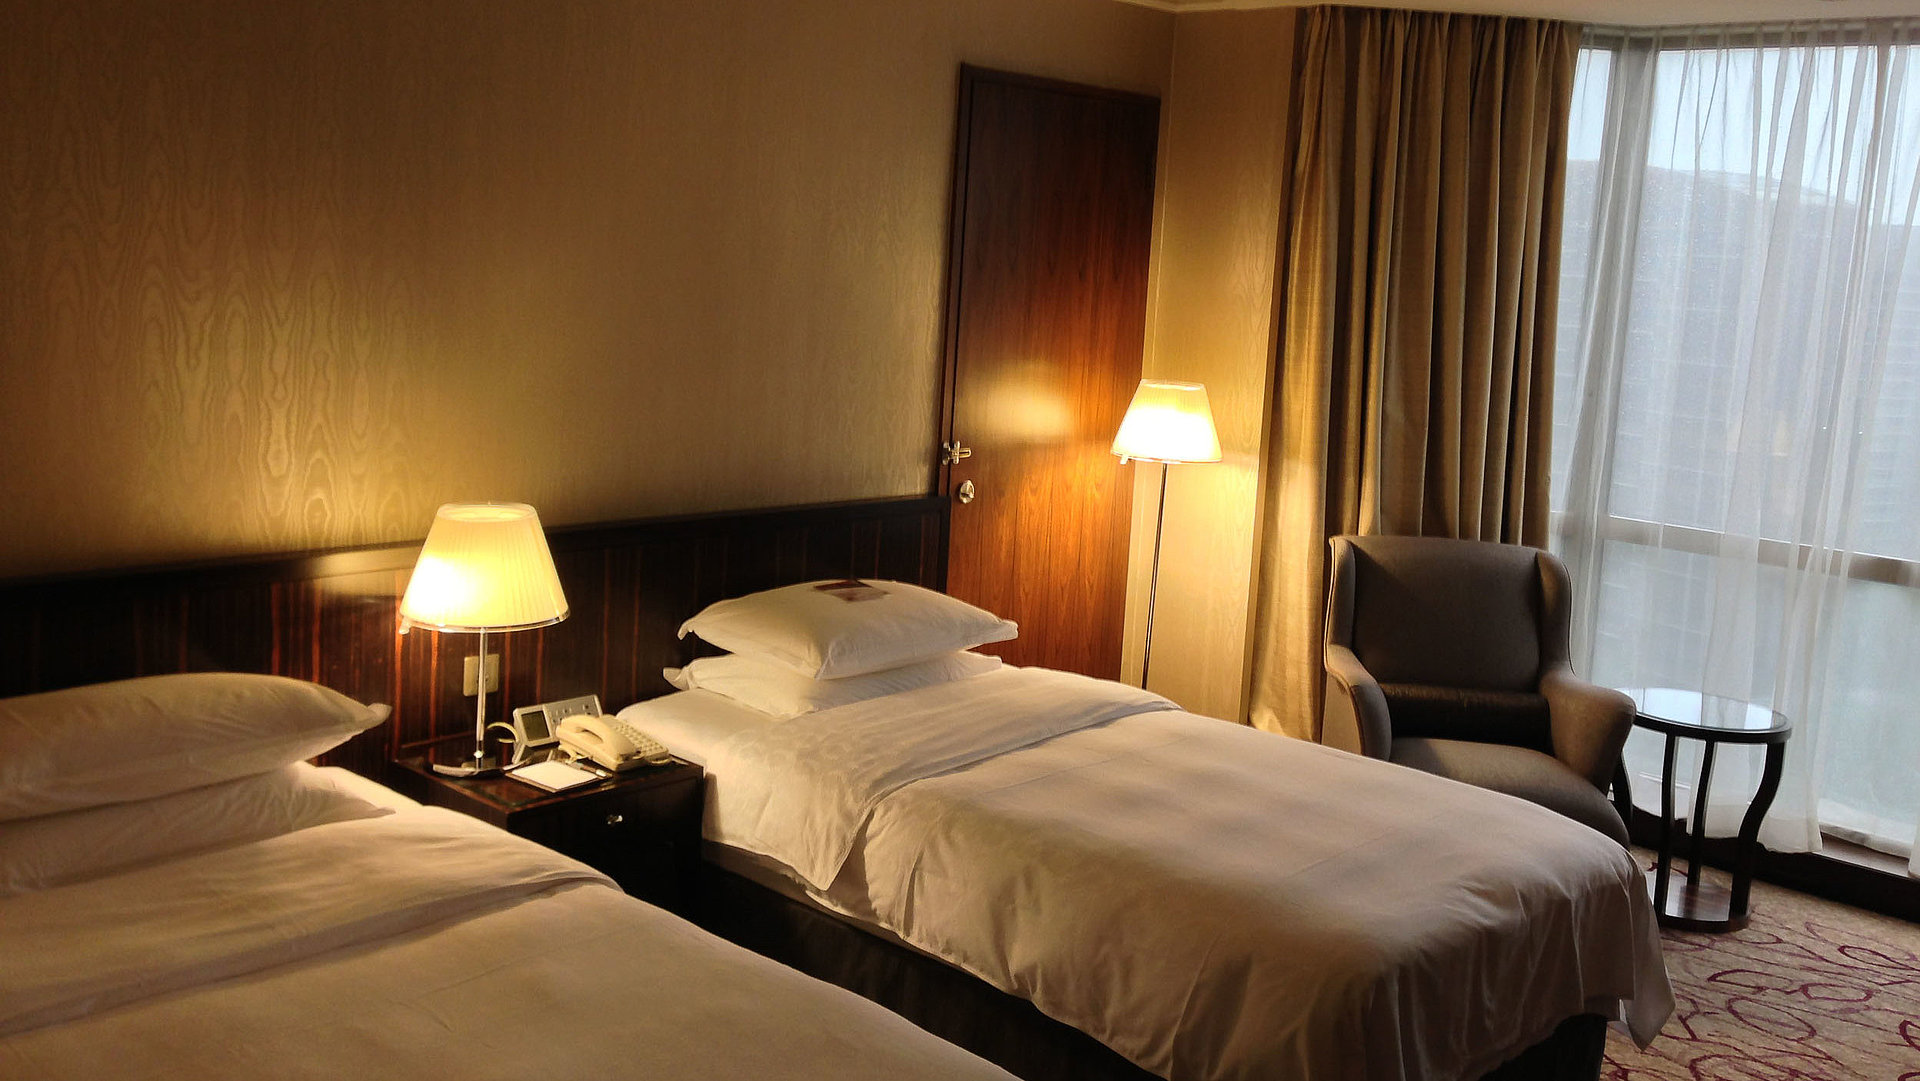 Pauschalangebote Unterkunft in Franken - sehr ordentliches Hotelzimmer mit zwei Betten, warmer Nachtlampe und Gardinen